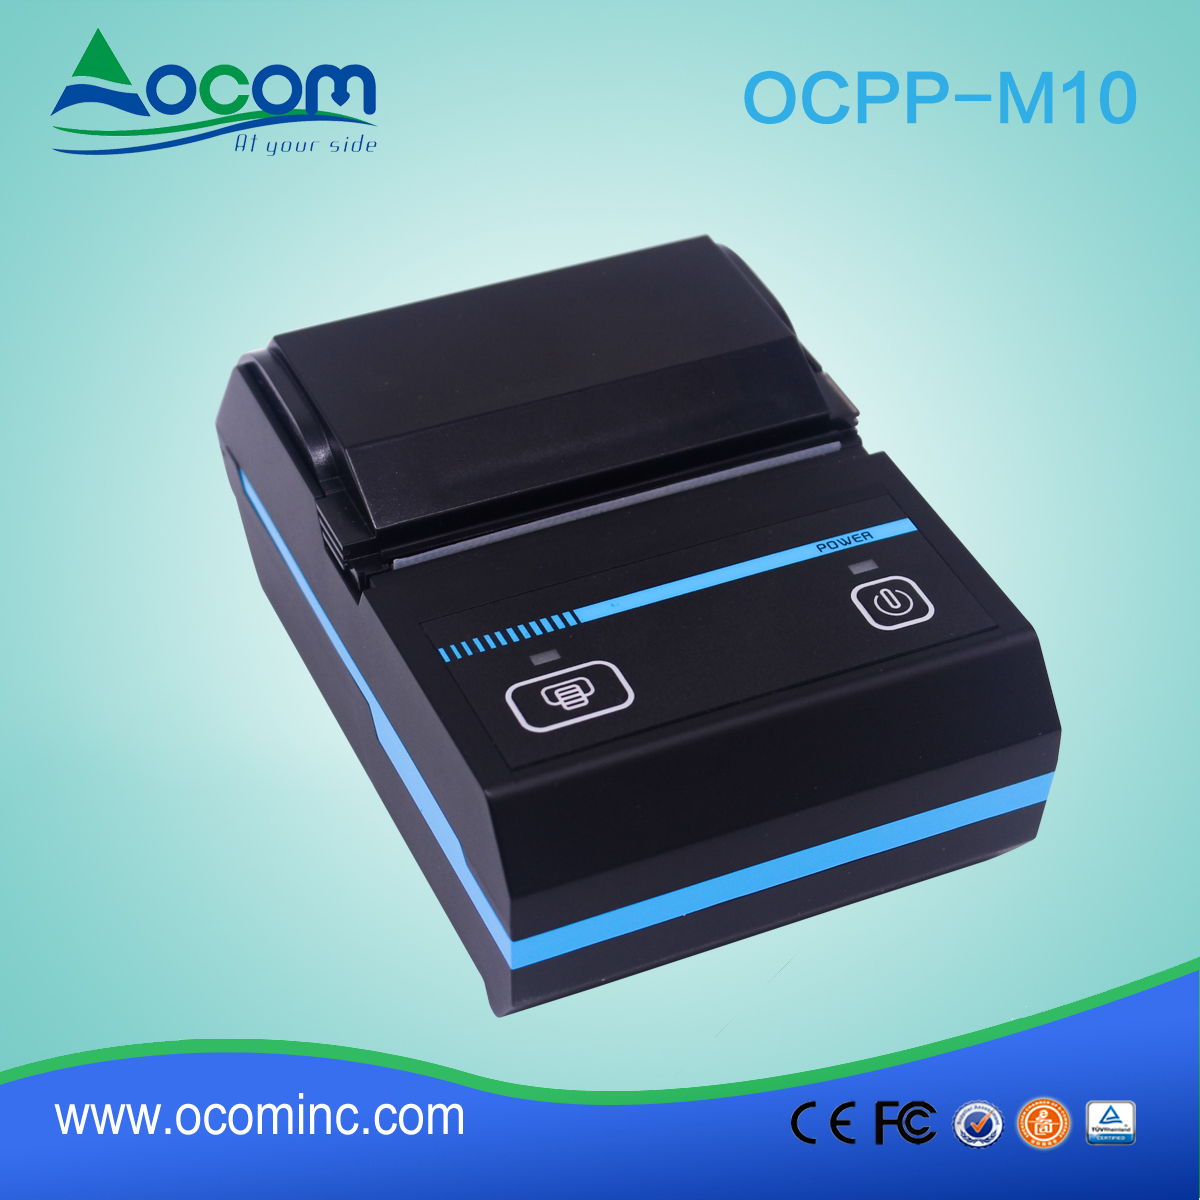 (OCPP -M10) ميني طابعة بلوتوث الحرارية المحمولة 58 مم